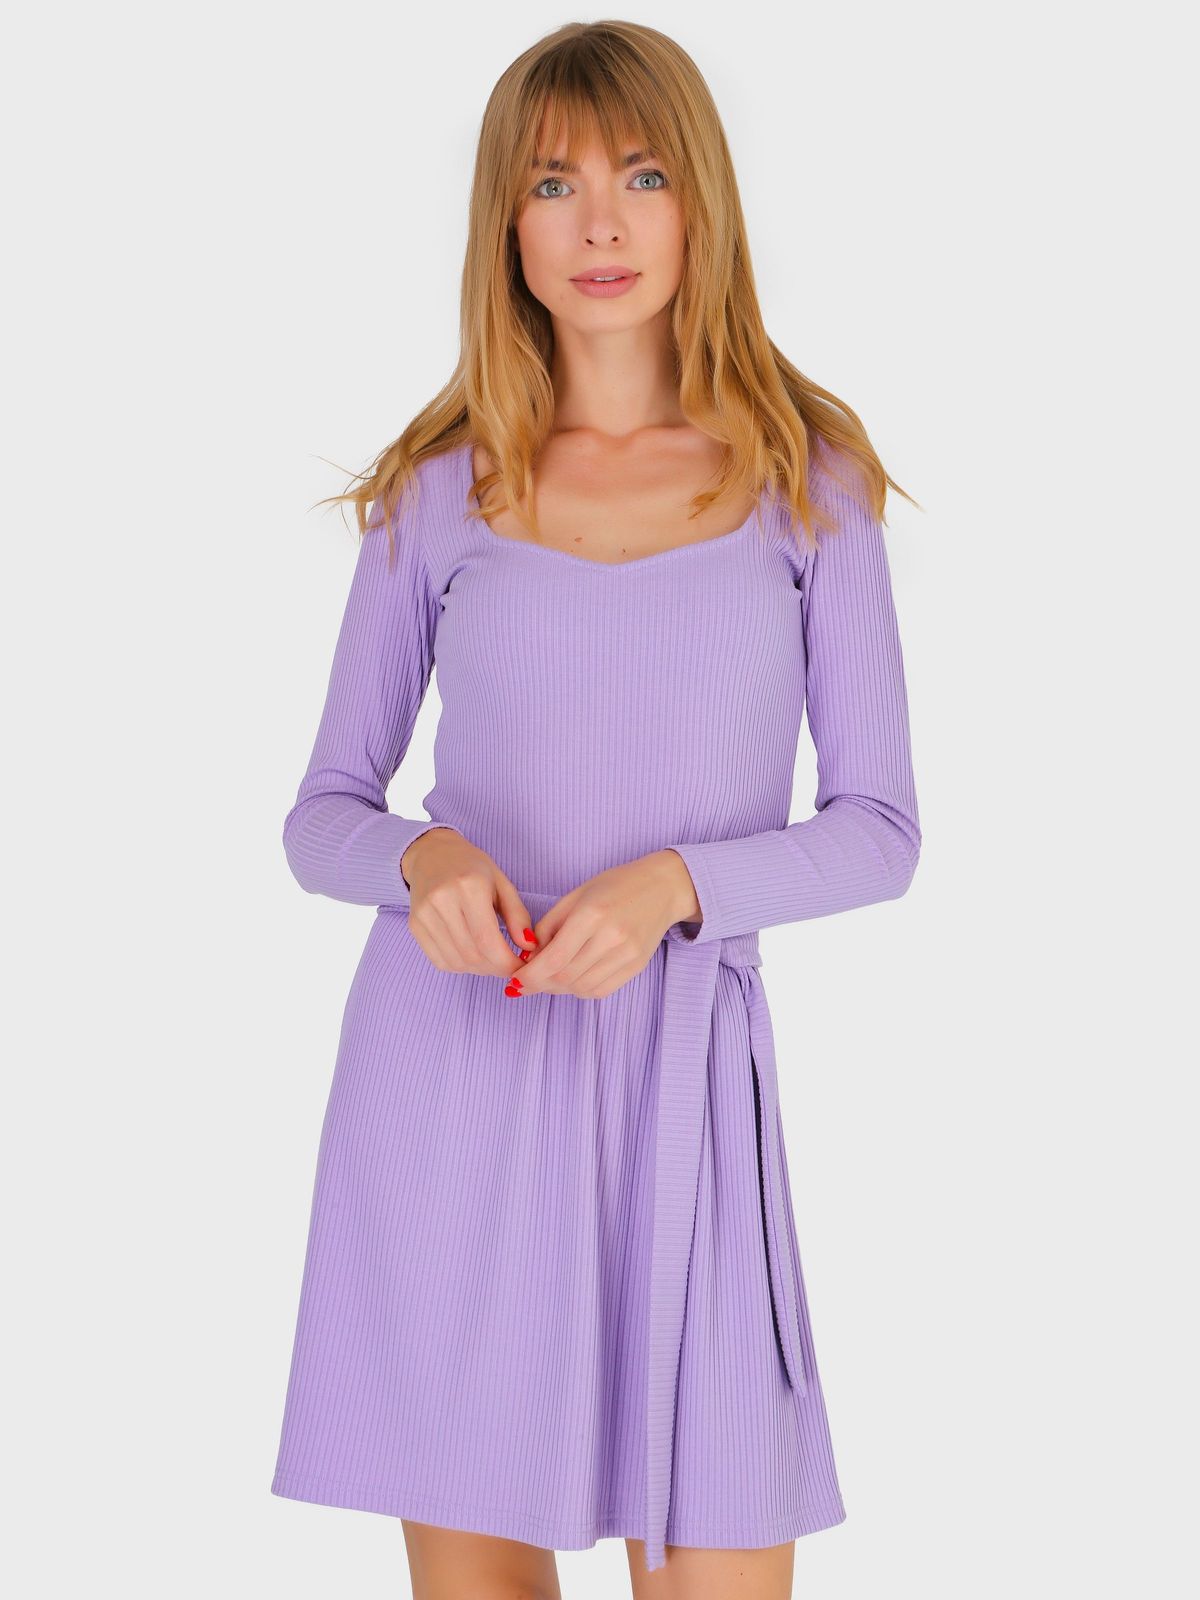 Купить Платье в рубчик Merlini Панамера 700000016 - Сиреневый, 42-44 в интернет-магазине